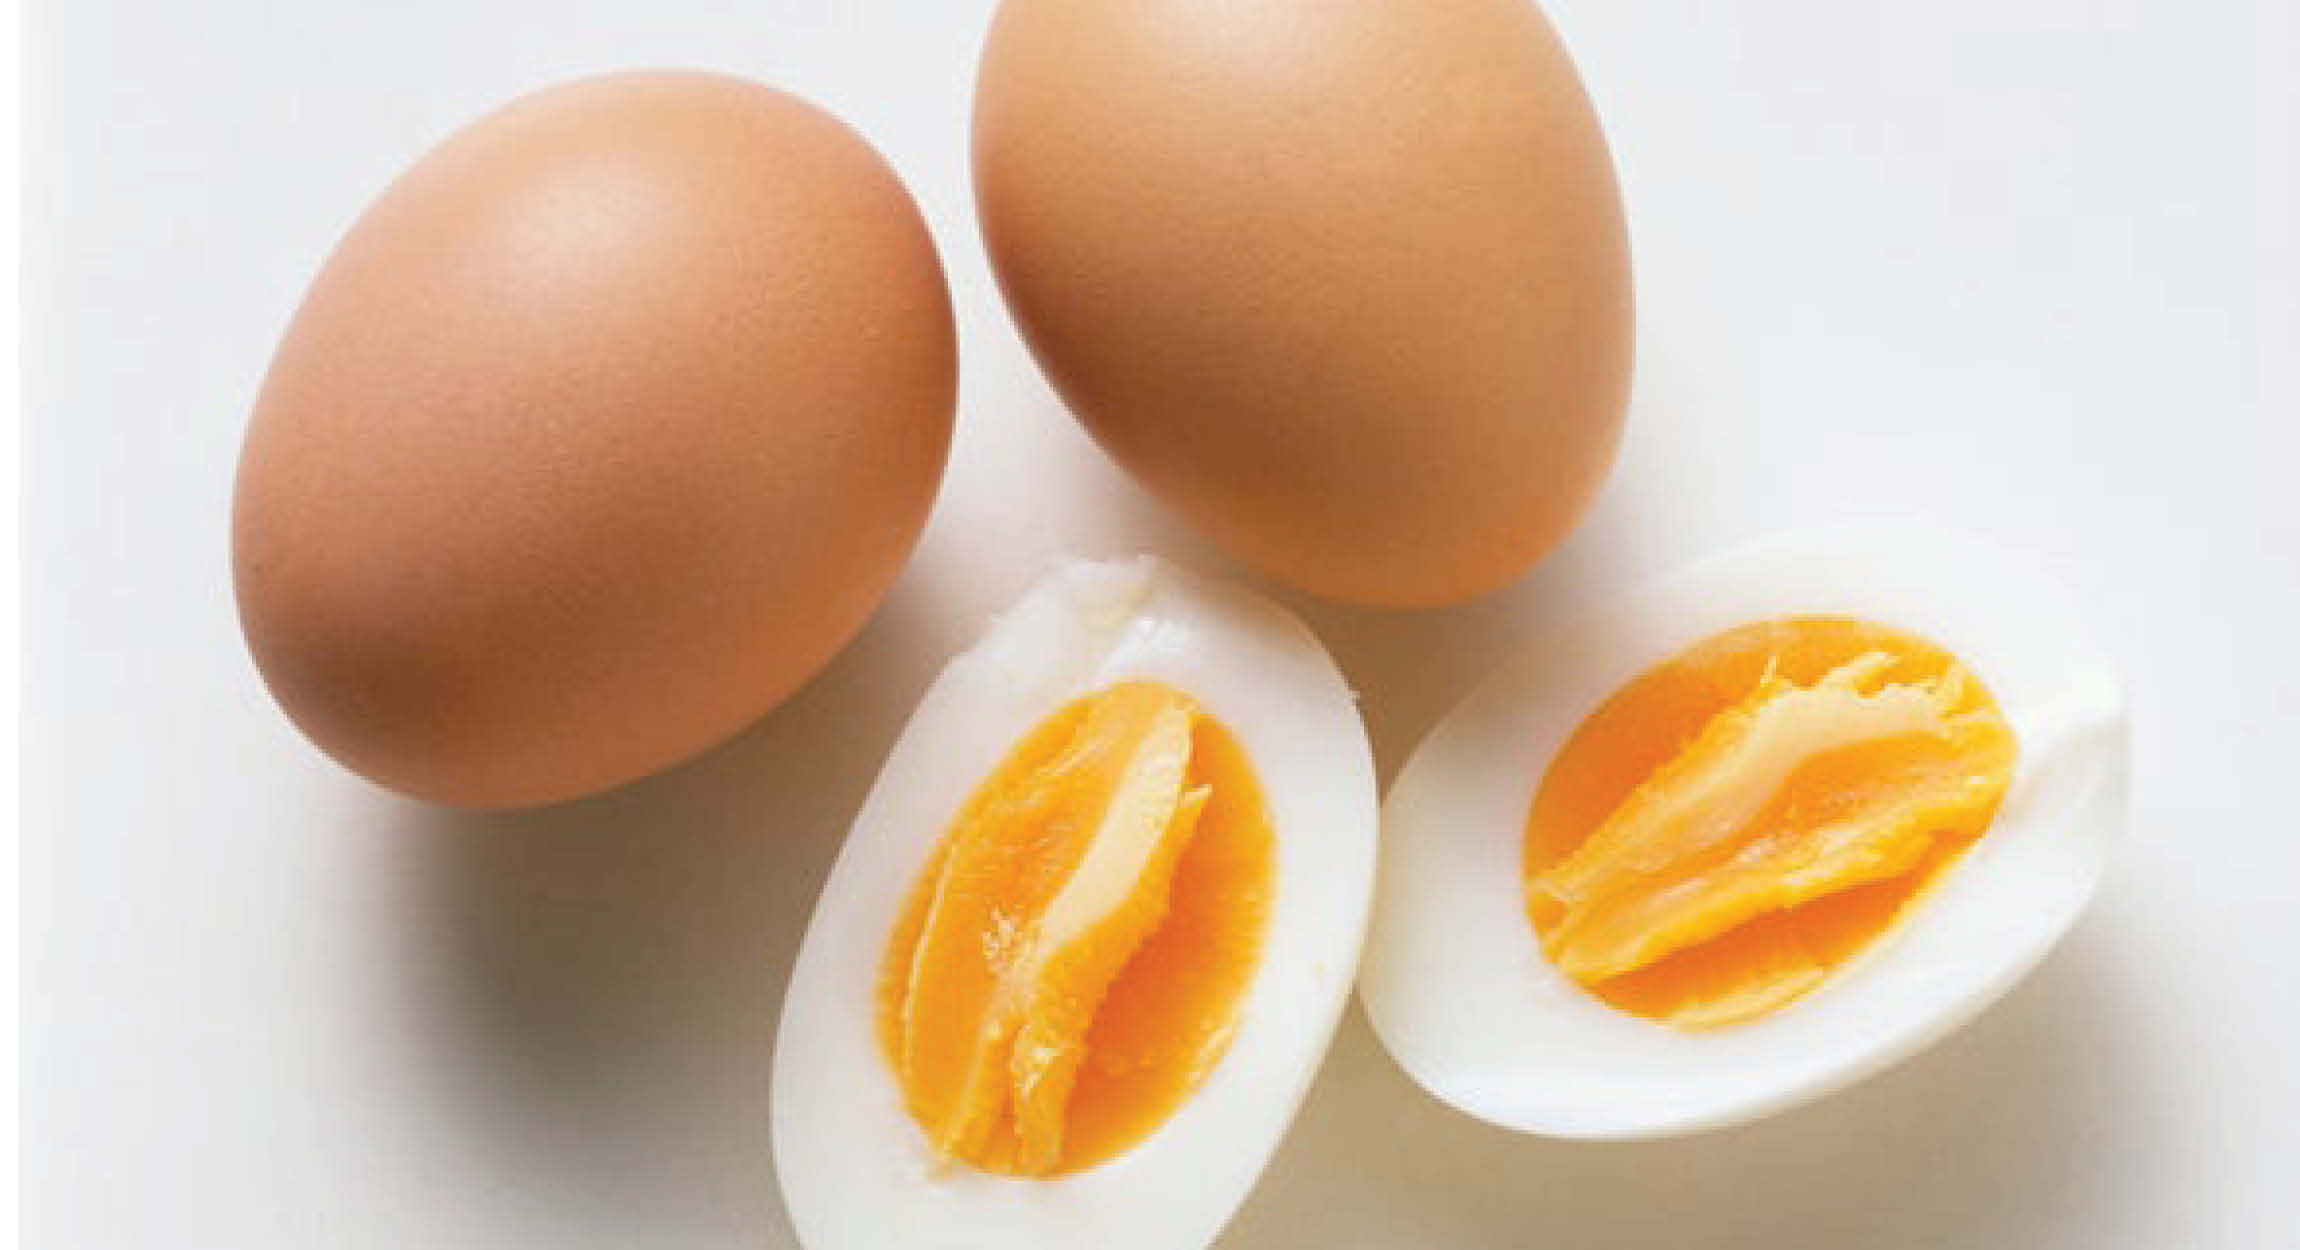 Ilustrasi telur ayam sumber protein hewani